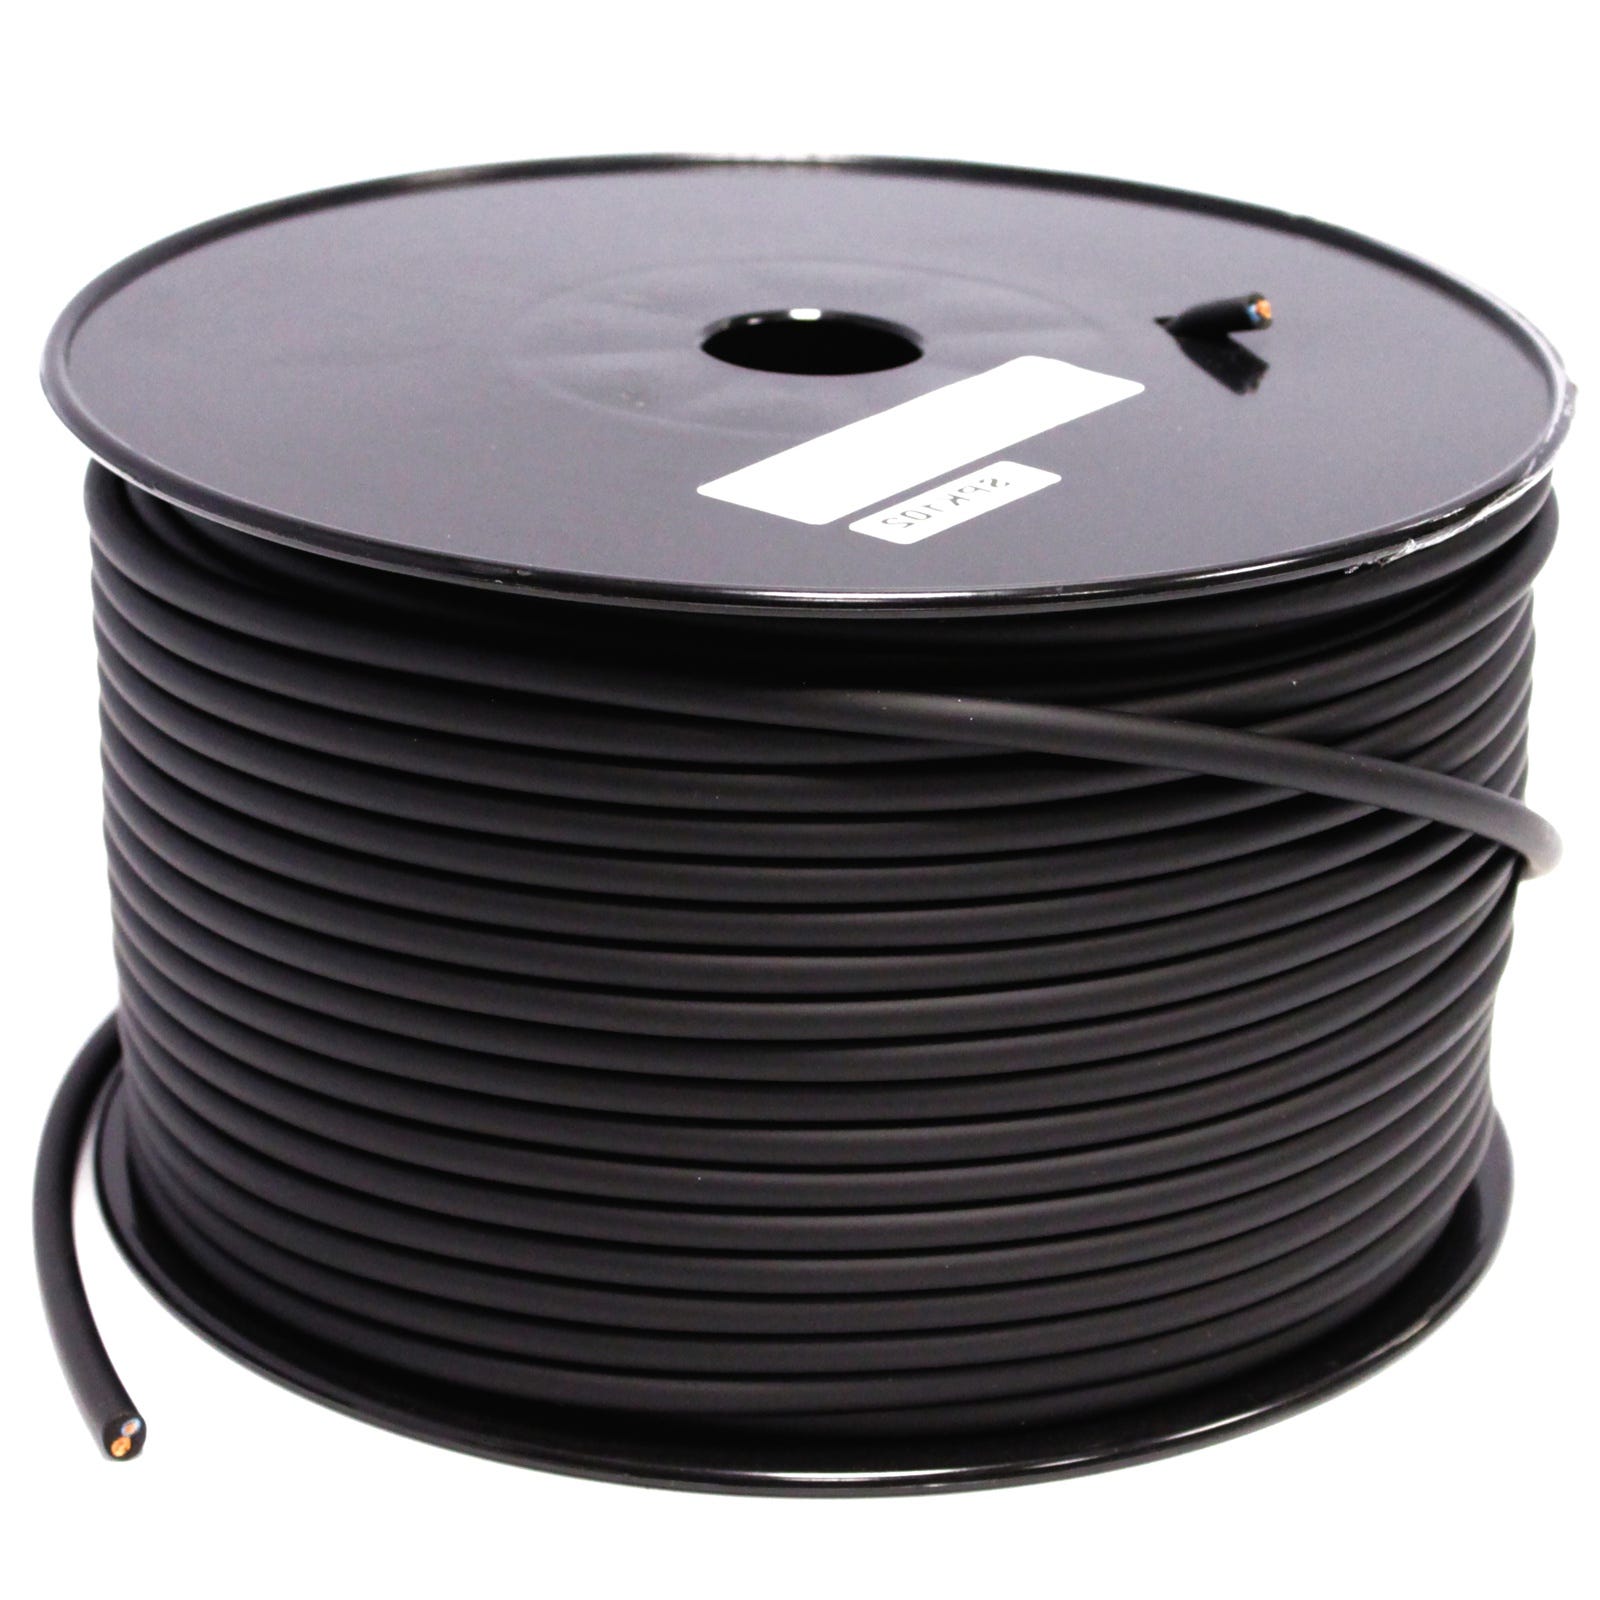 Cable de altavoces LEXMAN transparente 2x2,5 mm² 20 m